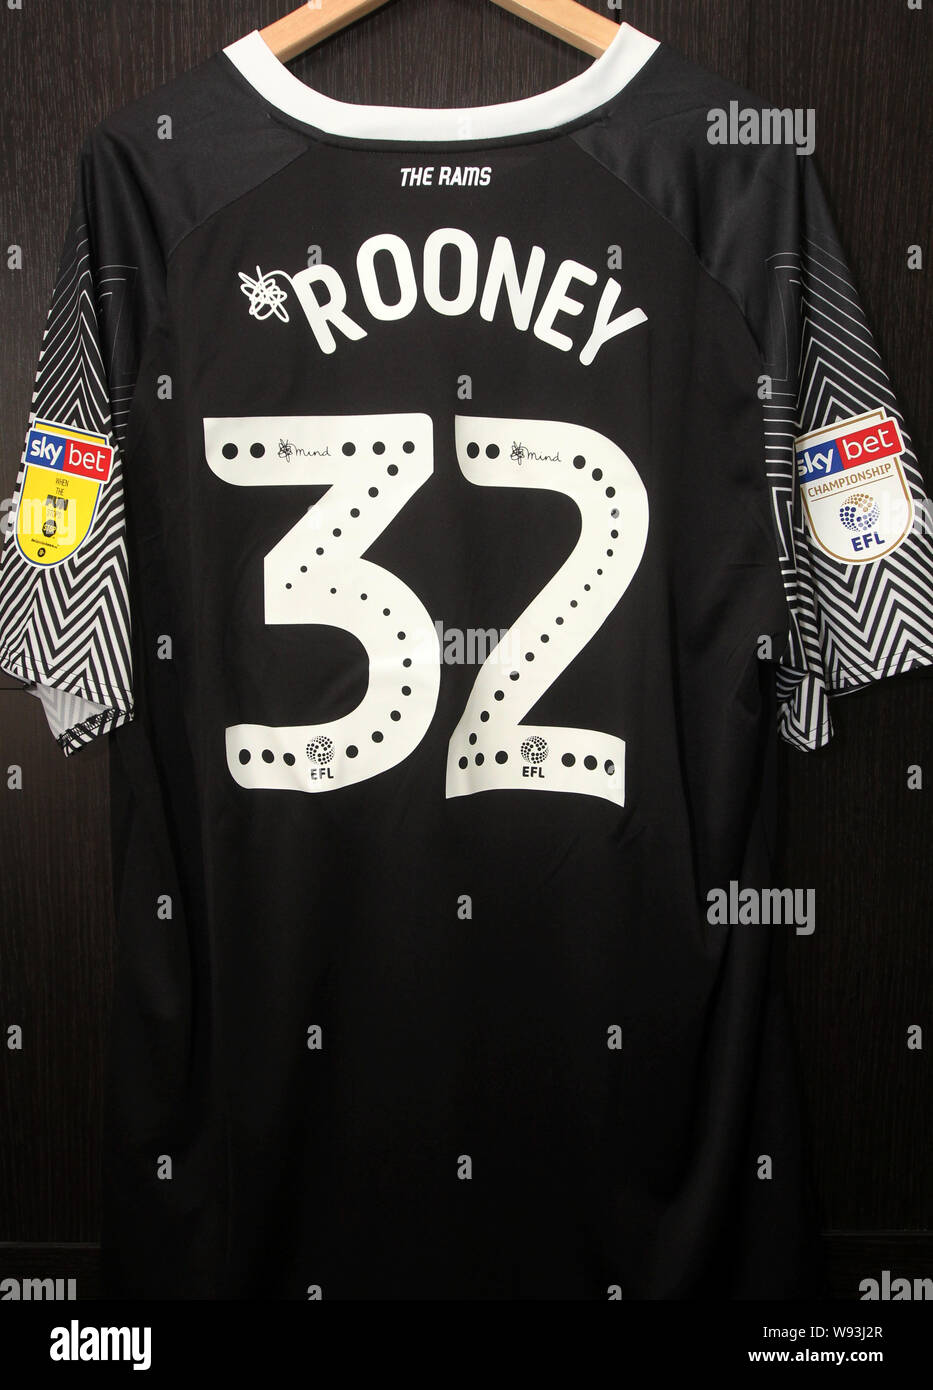 Derby County FC kit réplique officielle indiquant le numéro de Wayne Rooney 32 Chemise avec Sponsors 32 Rouge. Championnat Skybet aussi logos. Banque D'Images